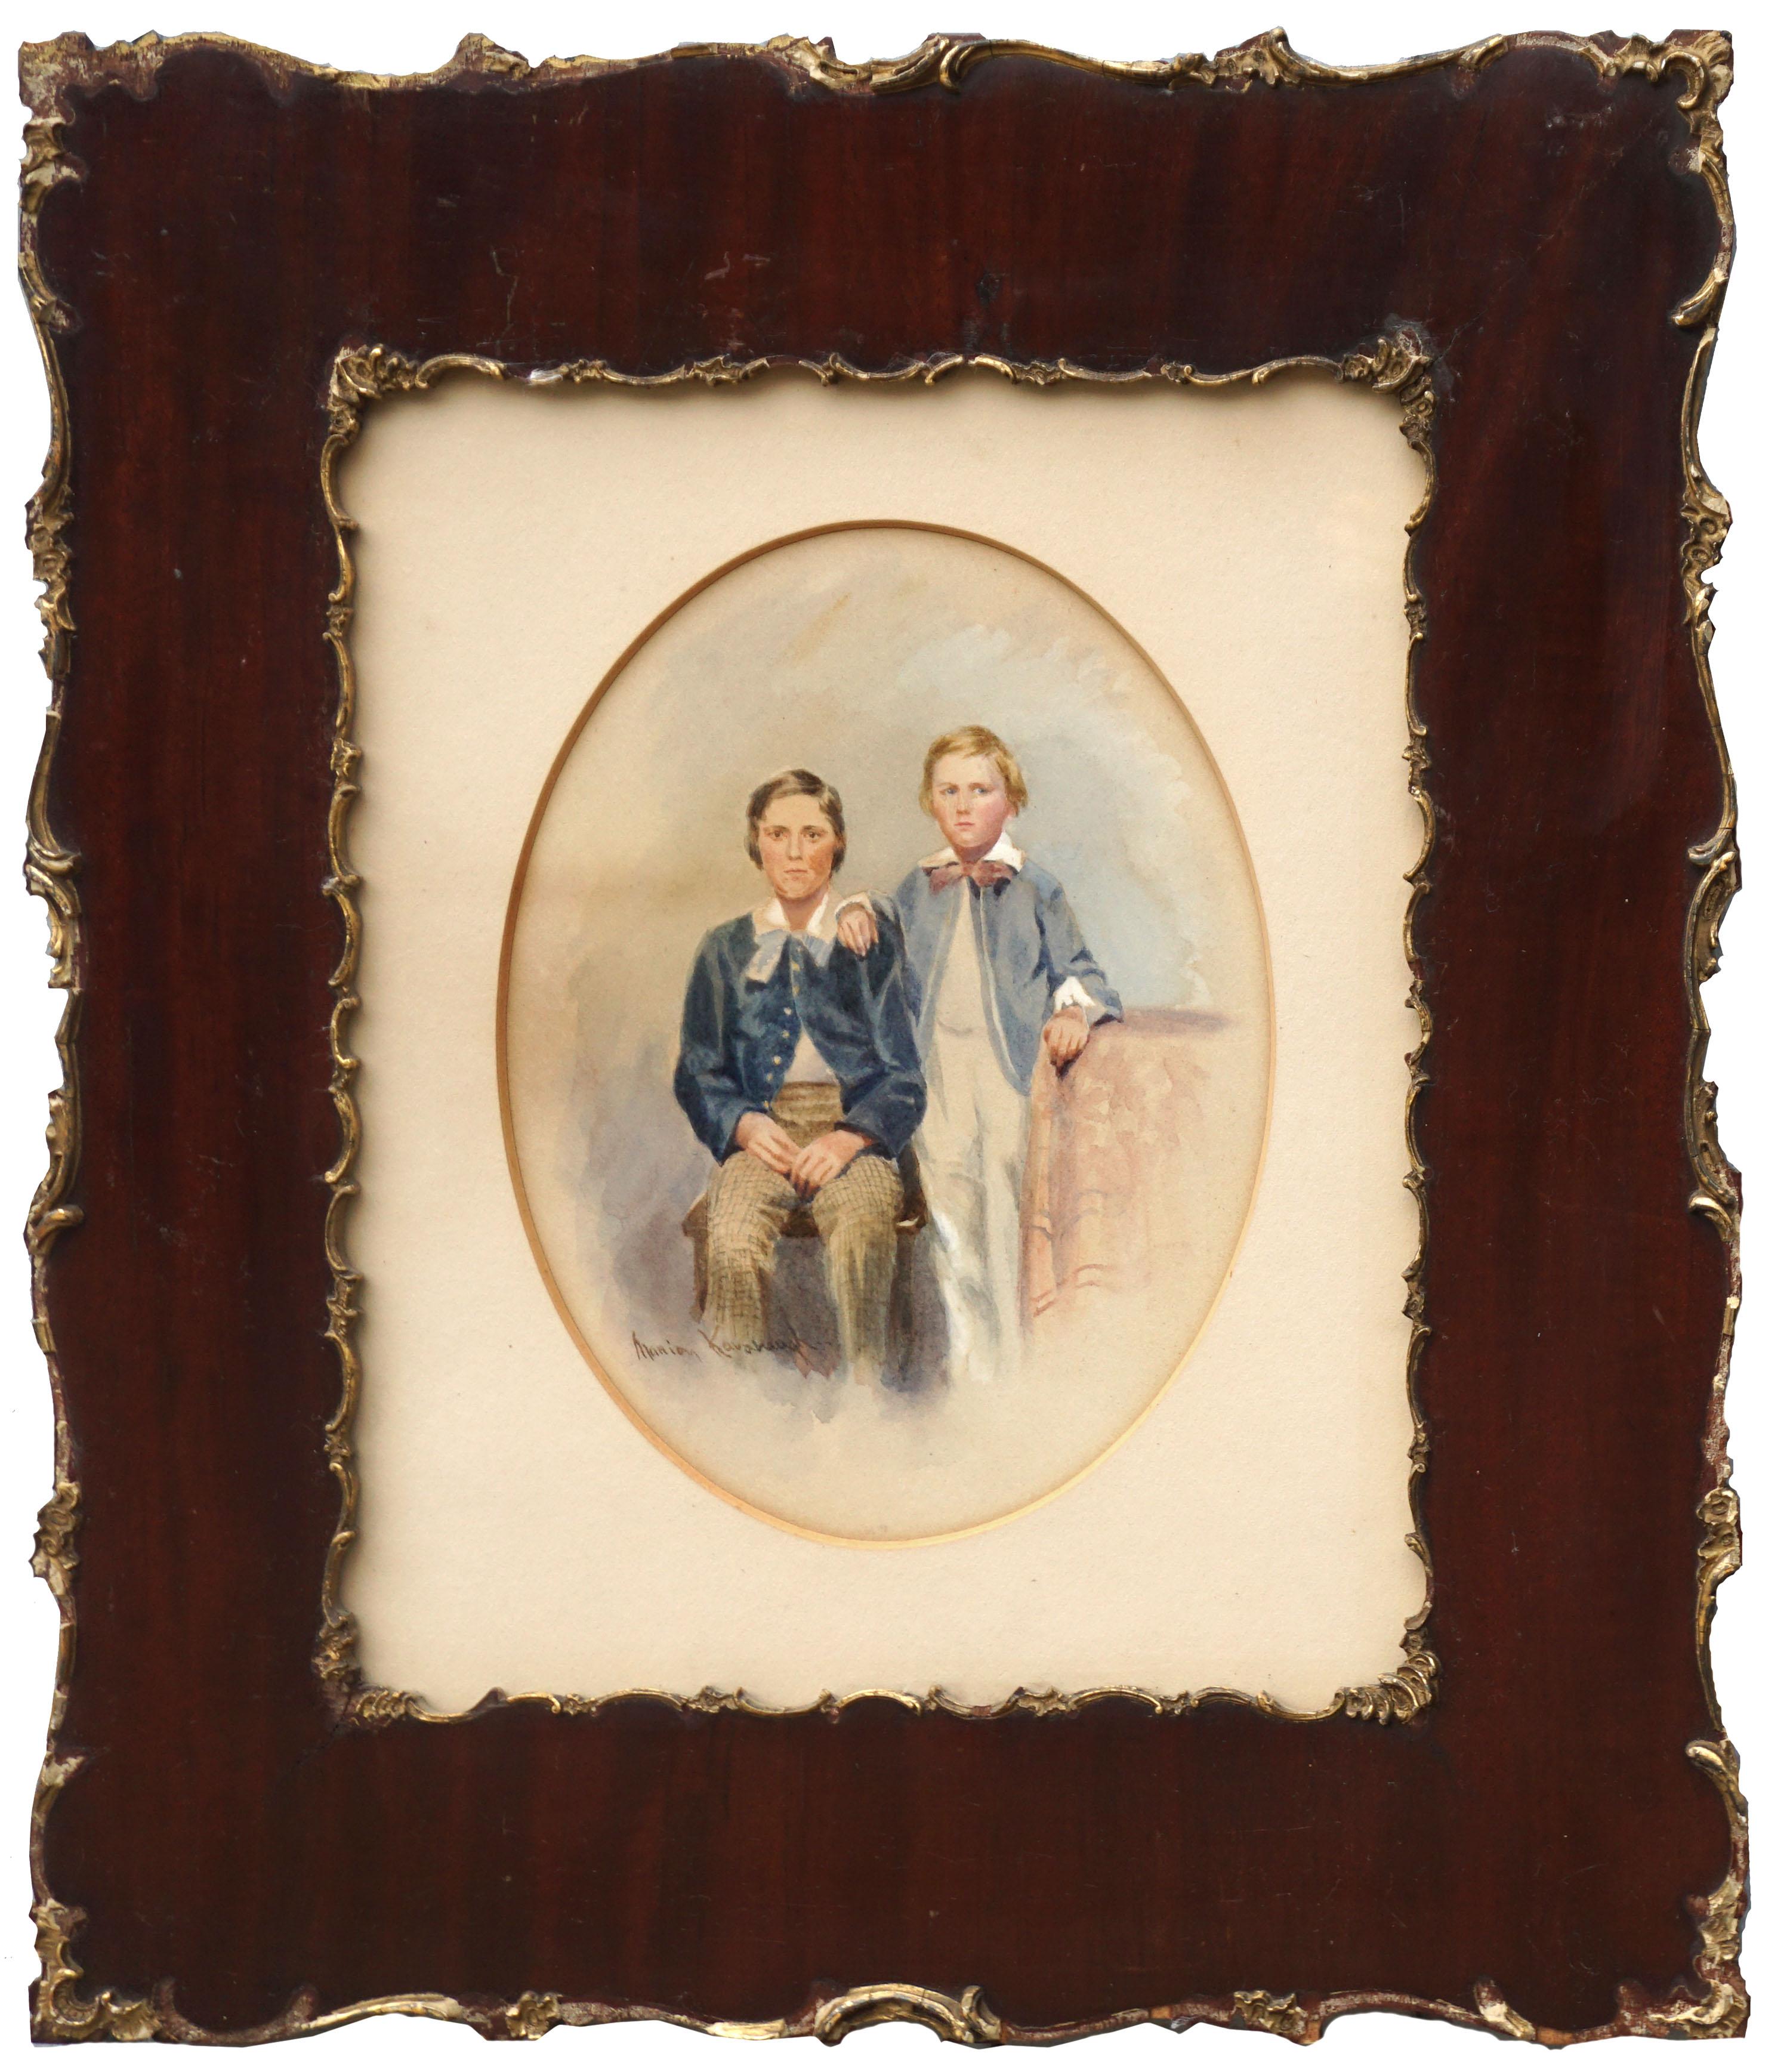 Portrait de deux frères au tournant du 20e siècle